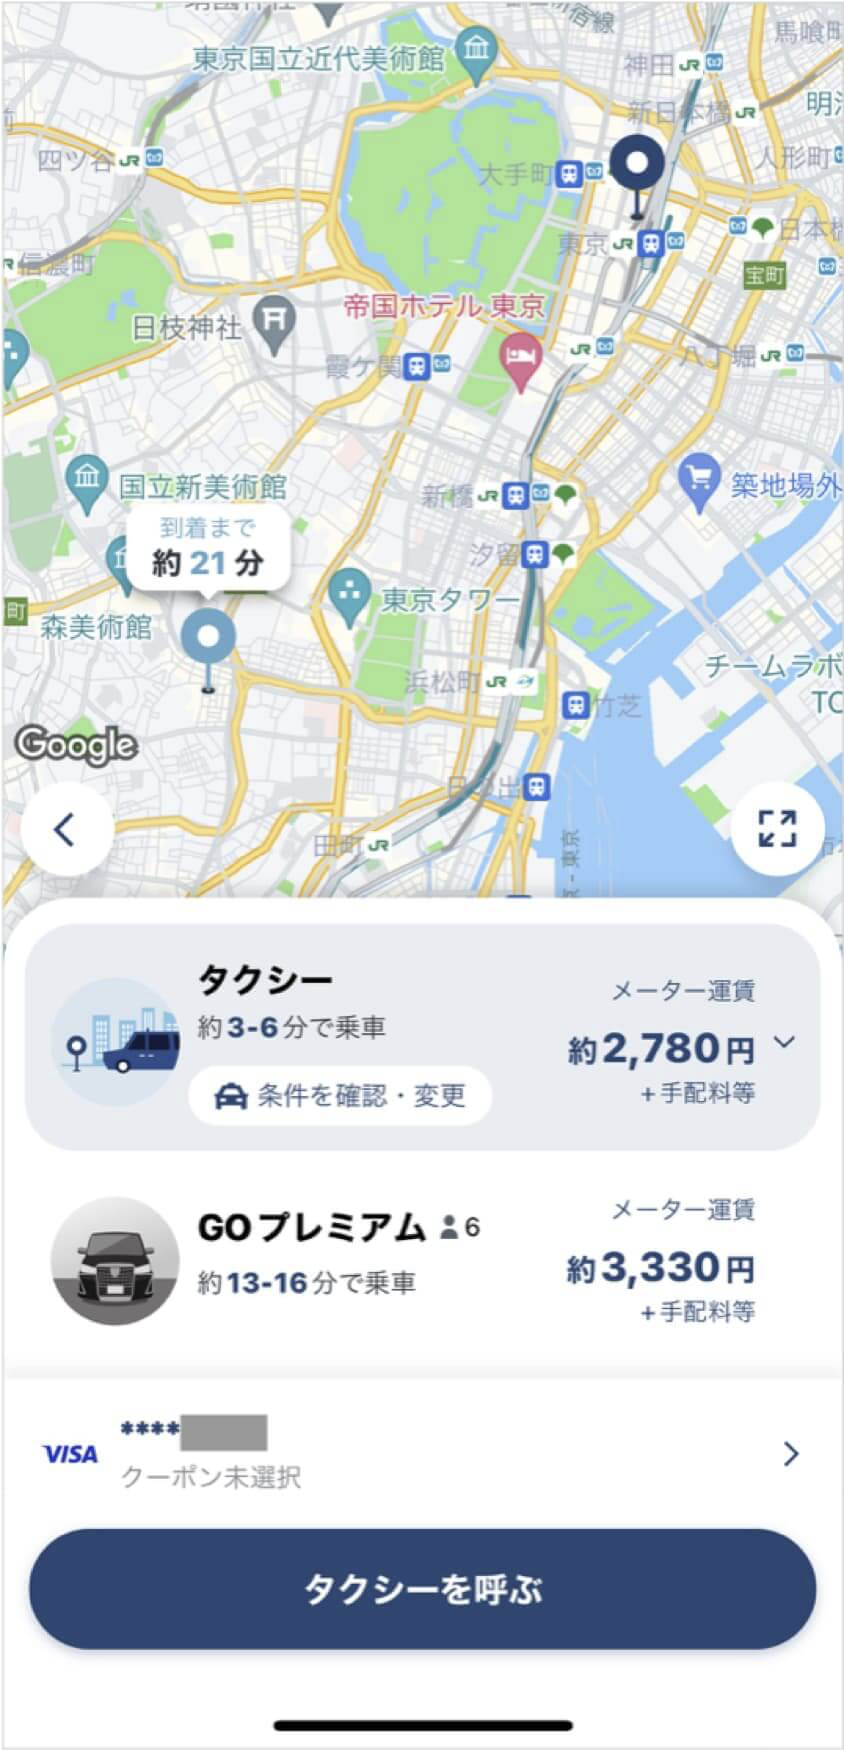 東京駅から麻布十番までのタクシー料金・所要時間まとめ